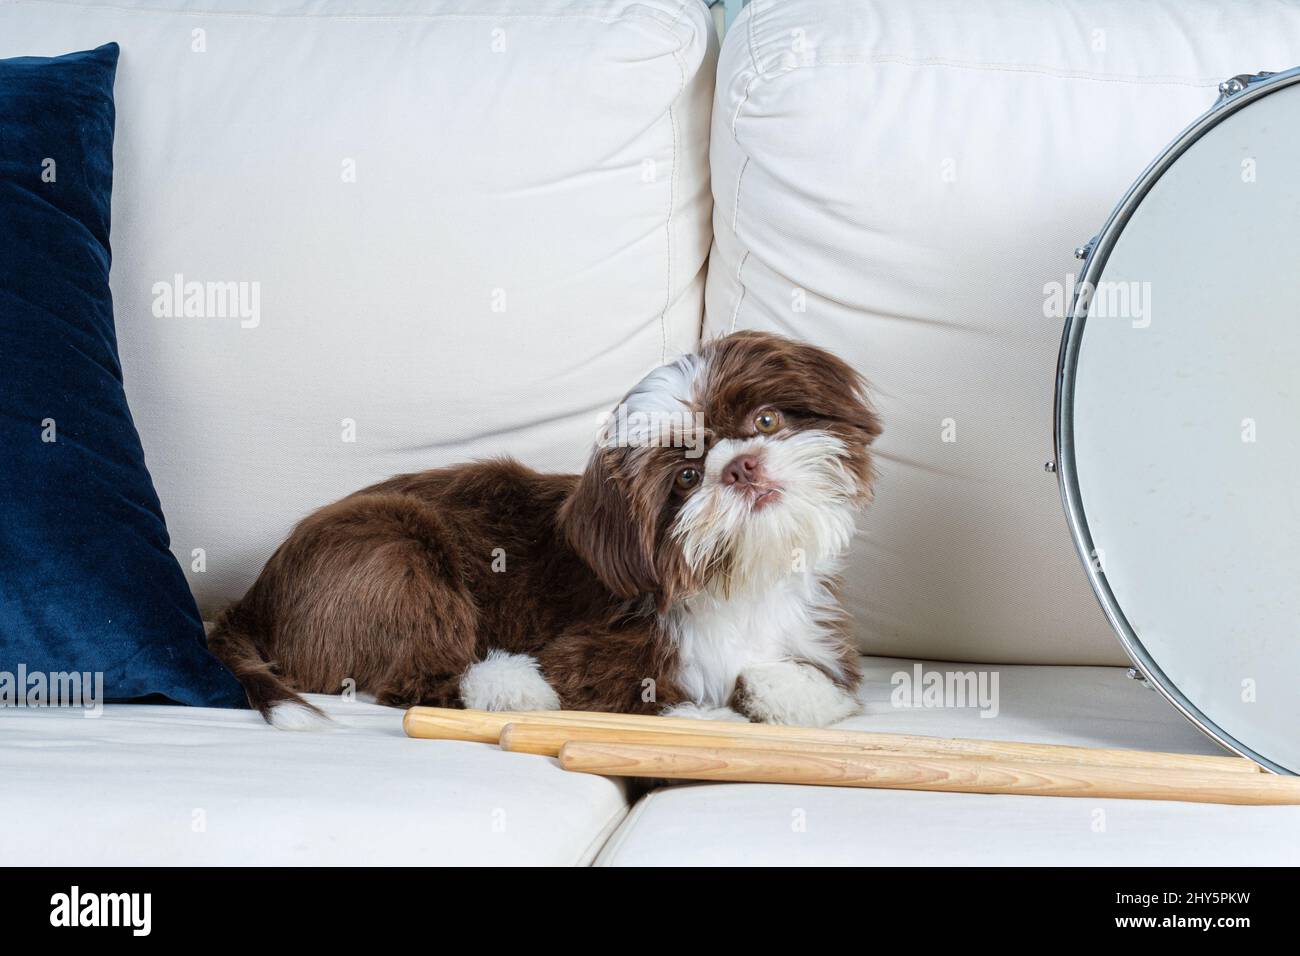 Cucciolo Shih tzu su un divano bianco accanto ai bastoncini e al tamburo snare. Foto Stock